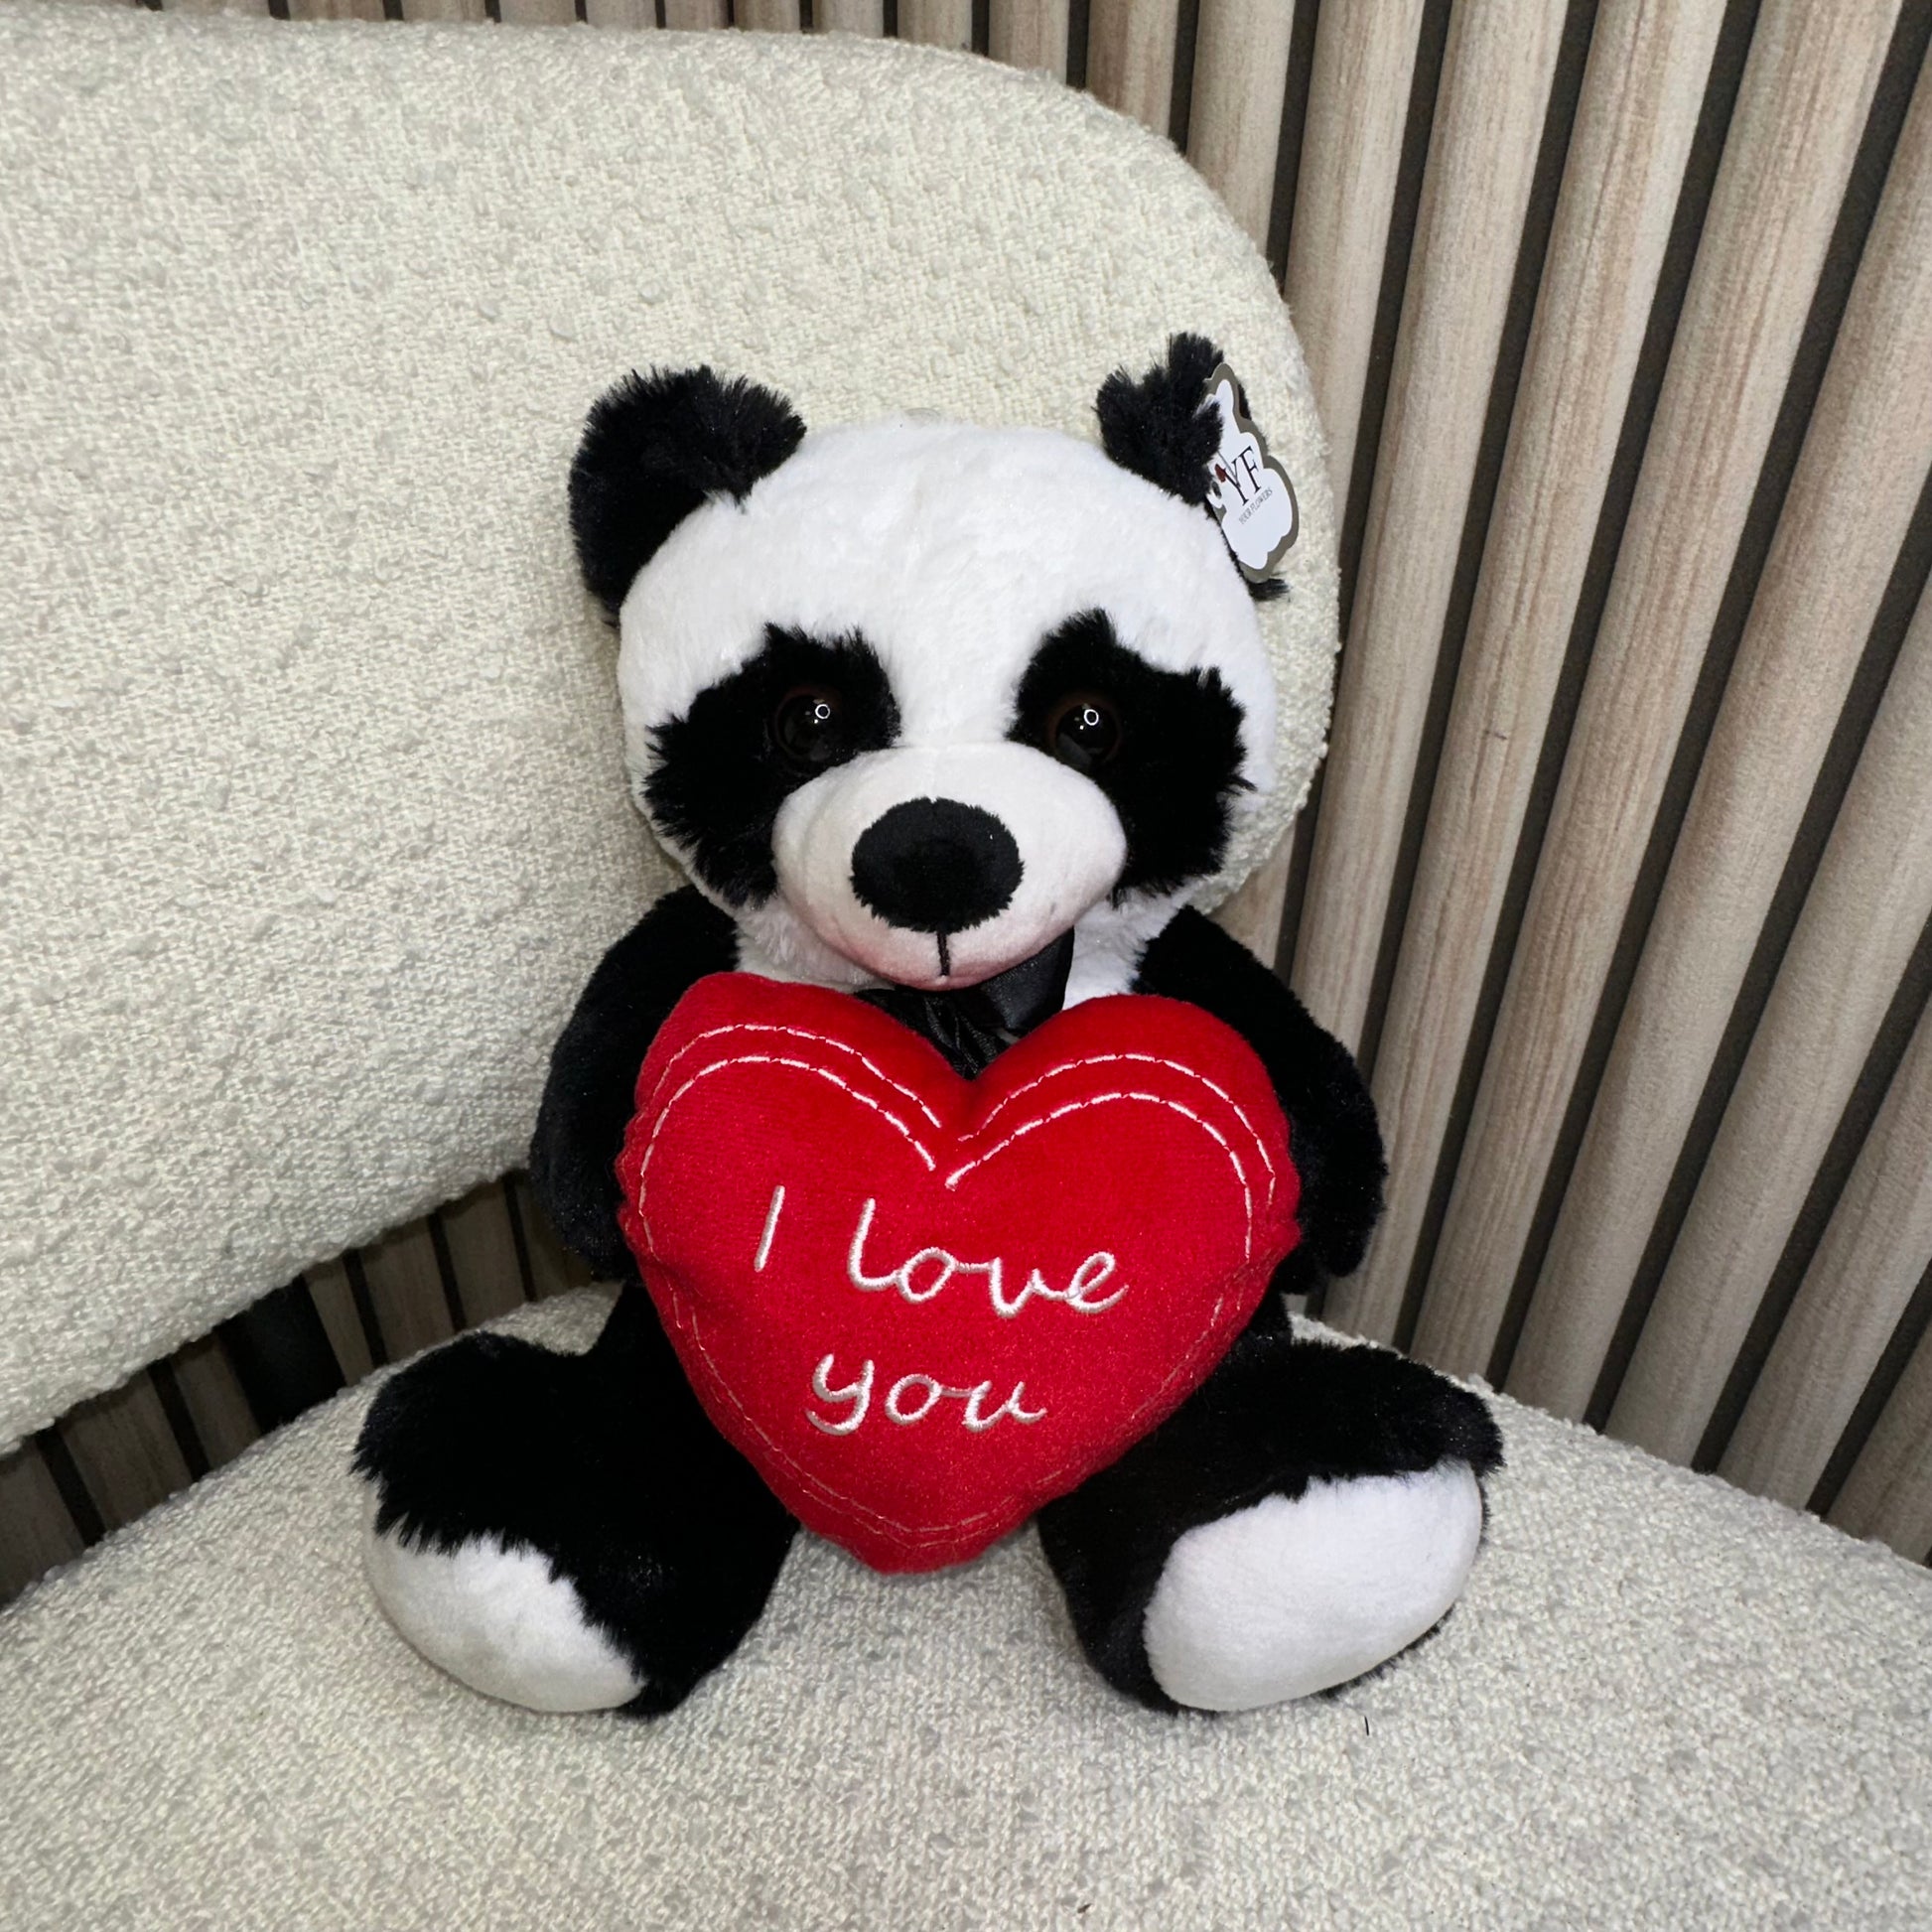 Coffret cadeau Panda | Cadeaux Panda | Cadeaux d’ours panda | Cadeaux sur  le thème des pandas | Cadeau Panda Lover | Cadeaux de panda mignons |  Cadeau